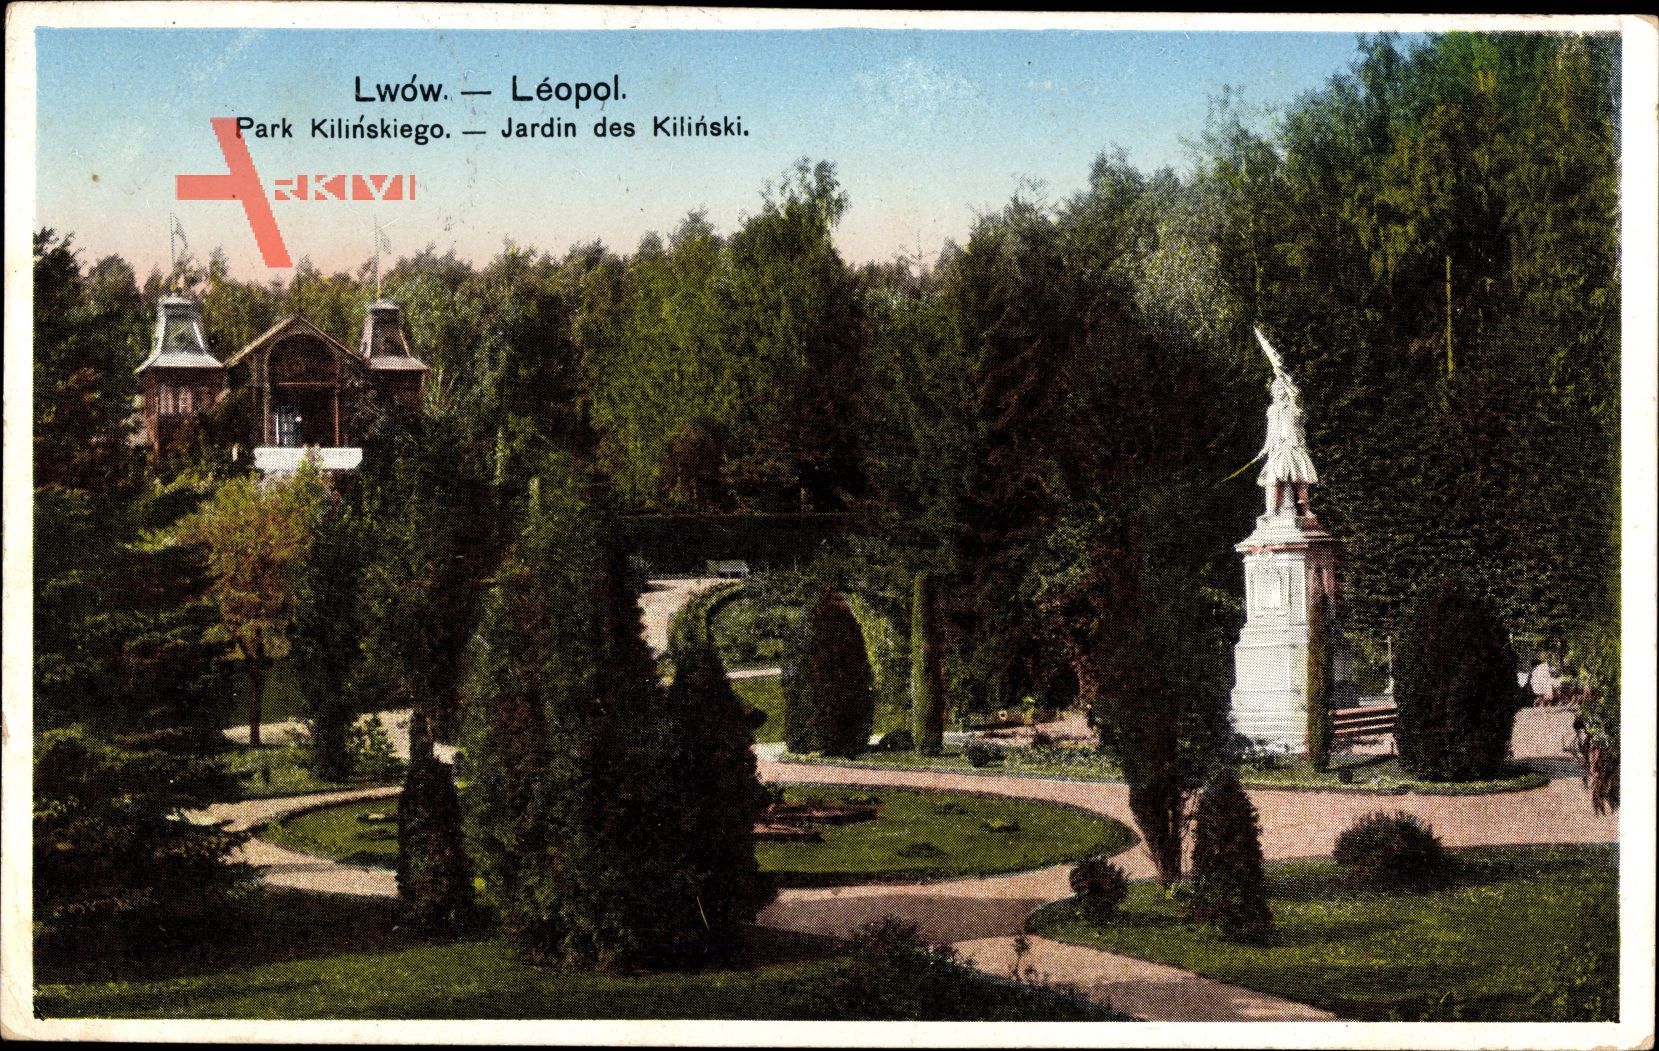 Lwów Lemberg Leopol Ukraine, Park Kilinskiego, Parkanlage, Statue